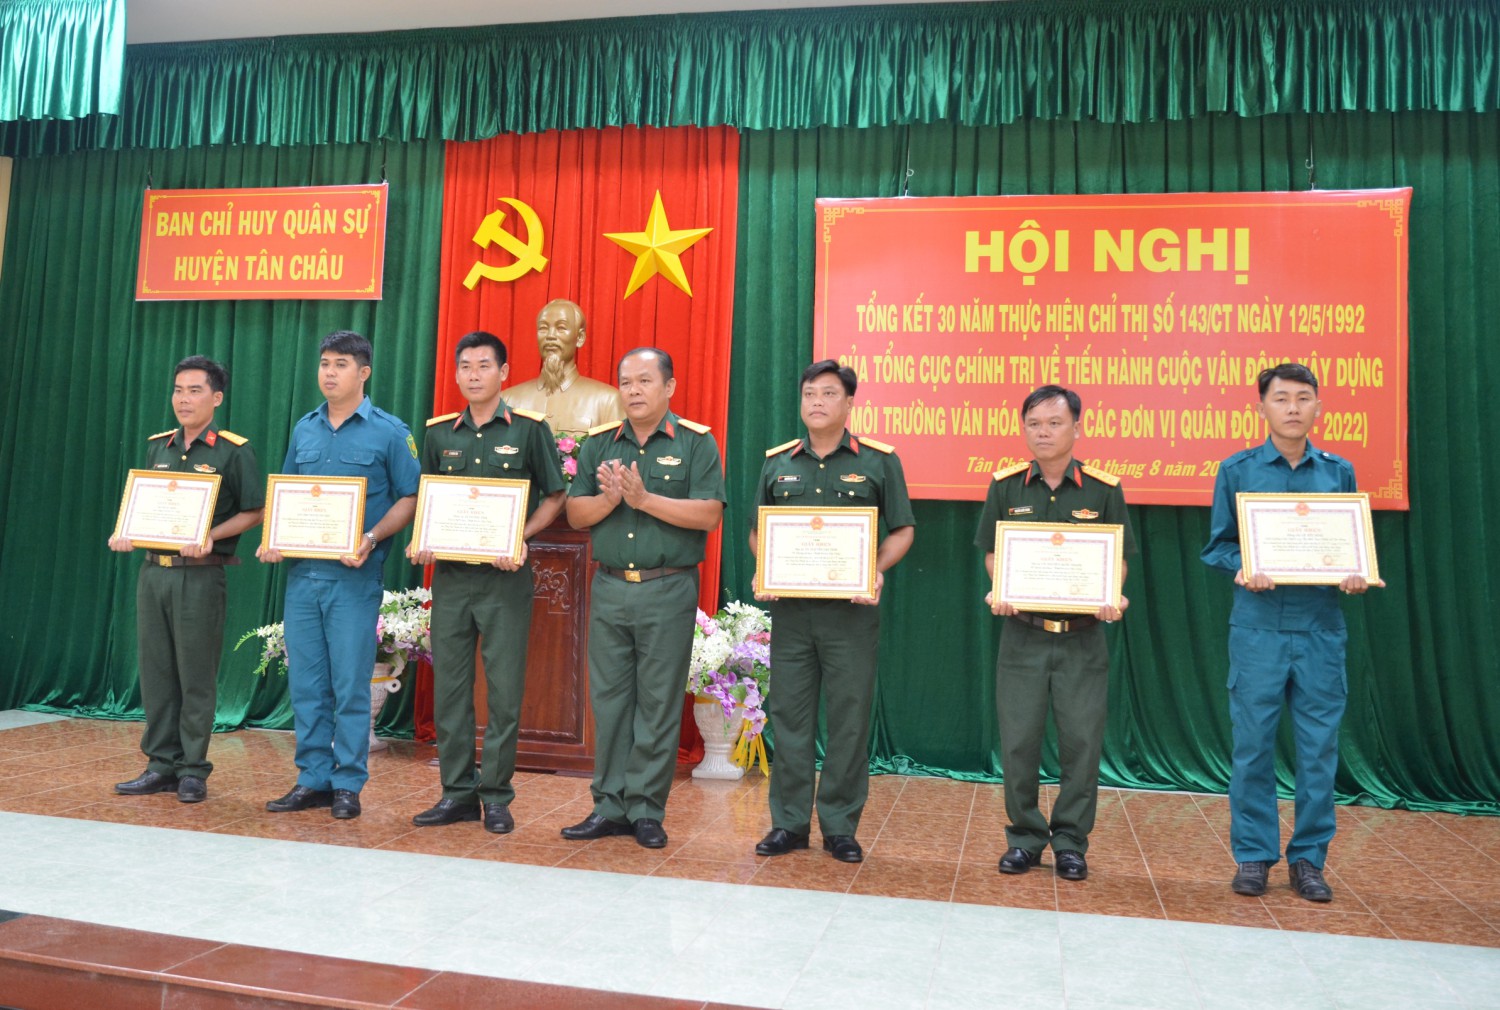 Ban chỉ huy Quân Sự Huyện Tân Châu  tổng kết 30 năm thực hiện Chỉ thị 143/CT của Tổng cục chính trị